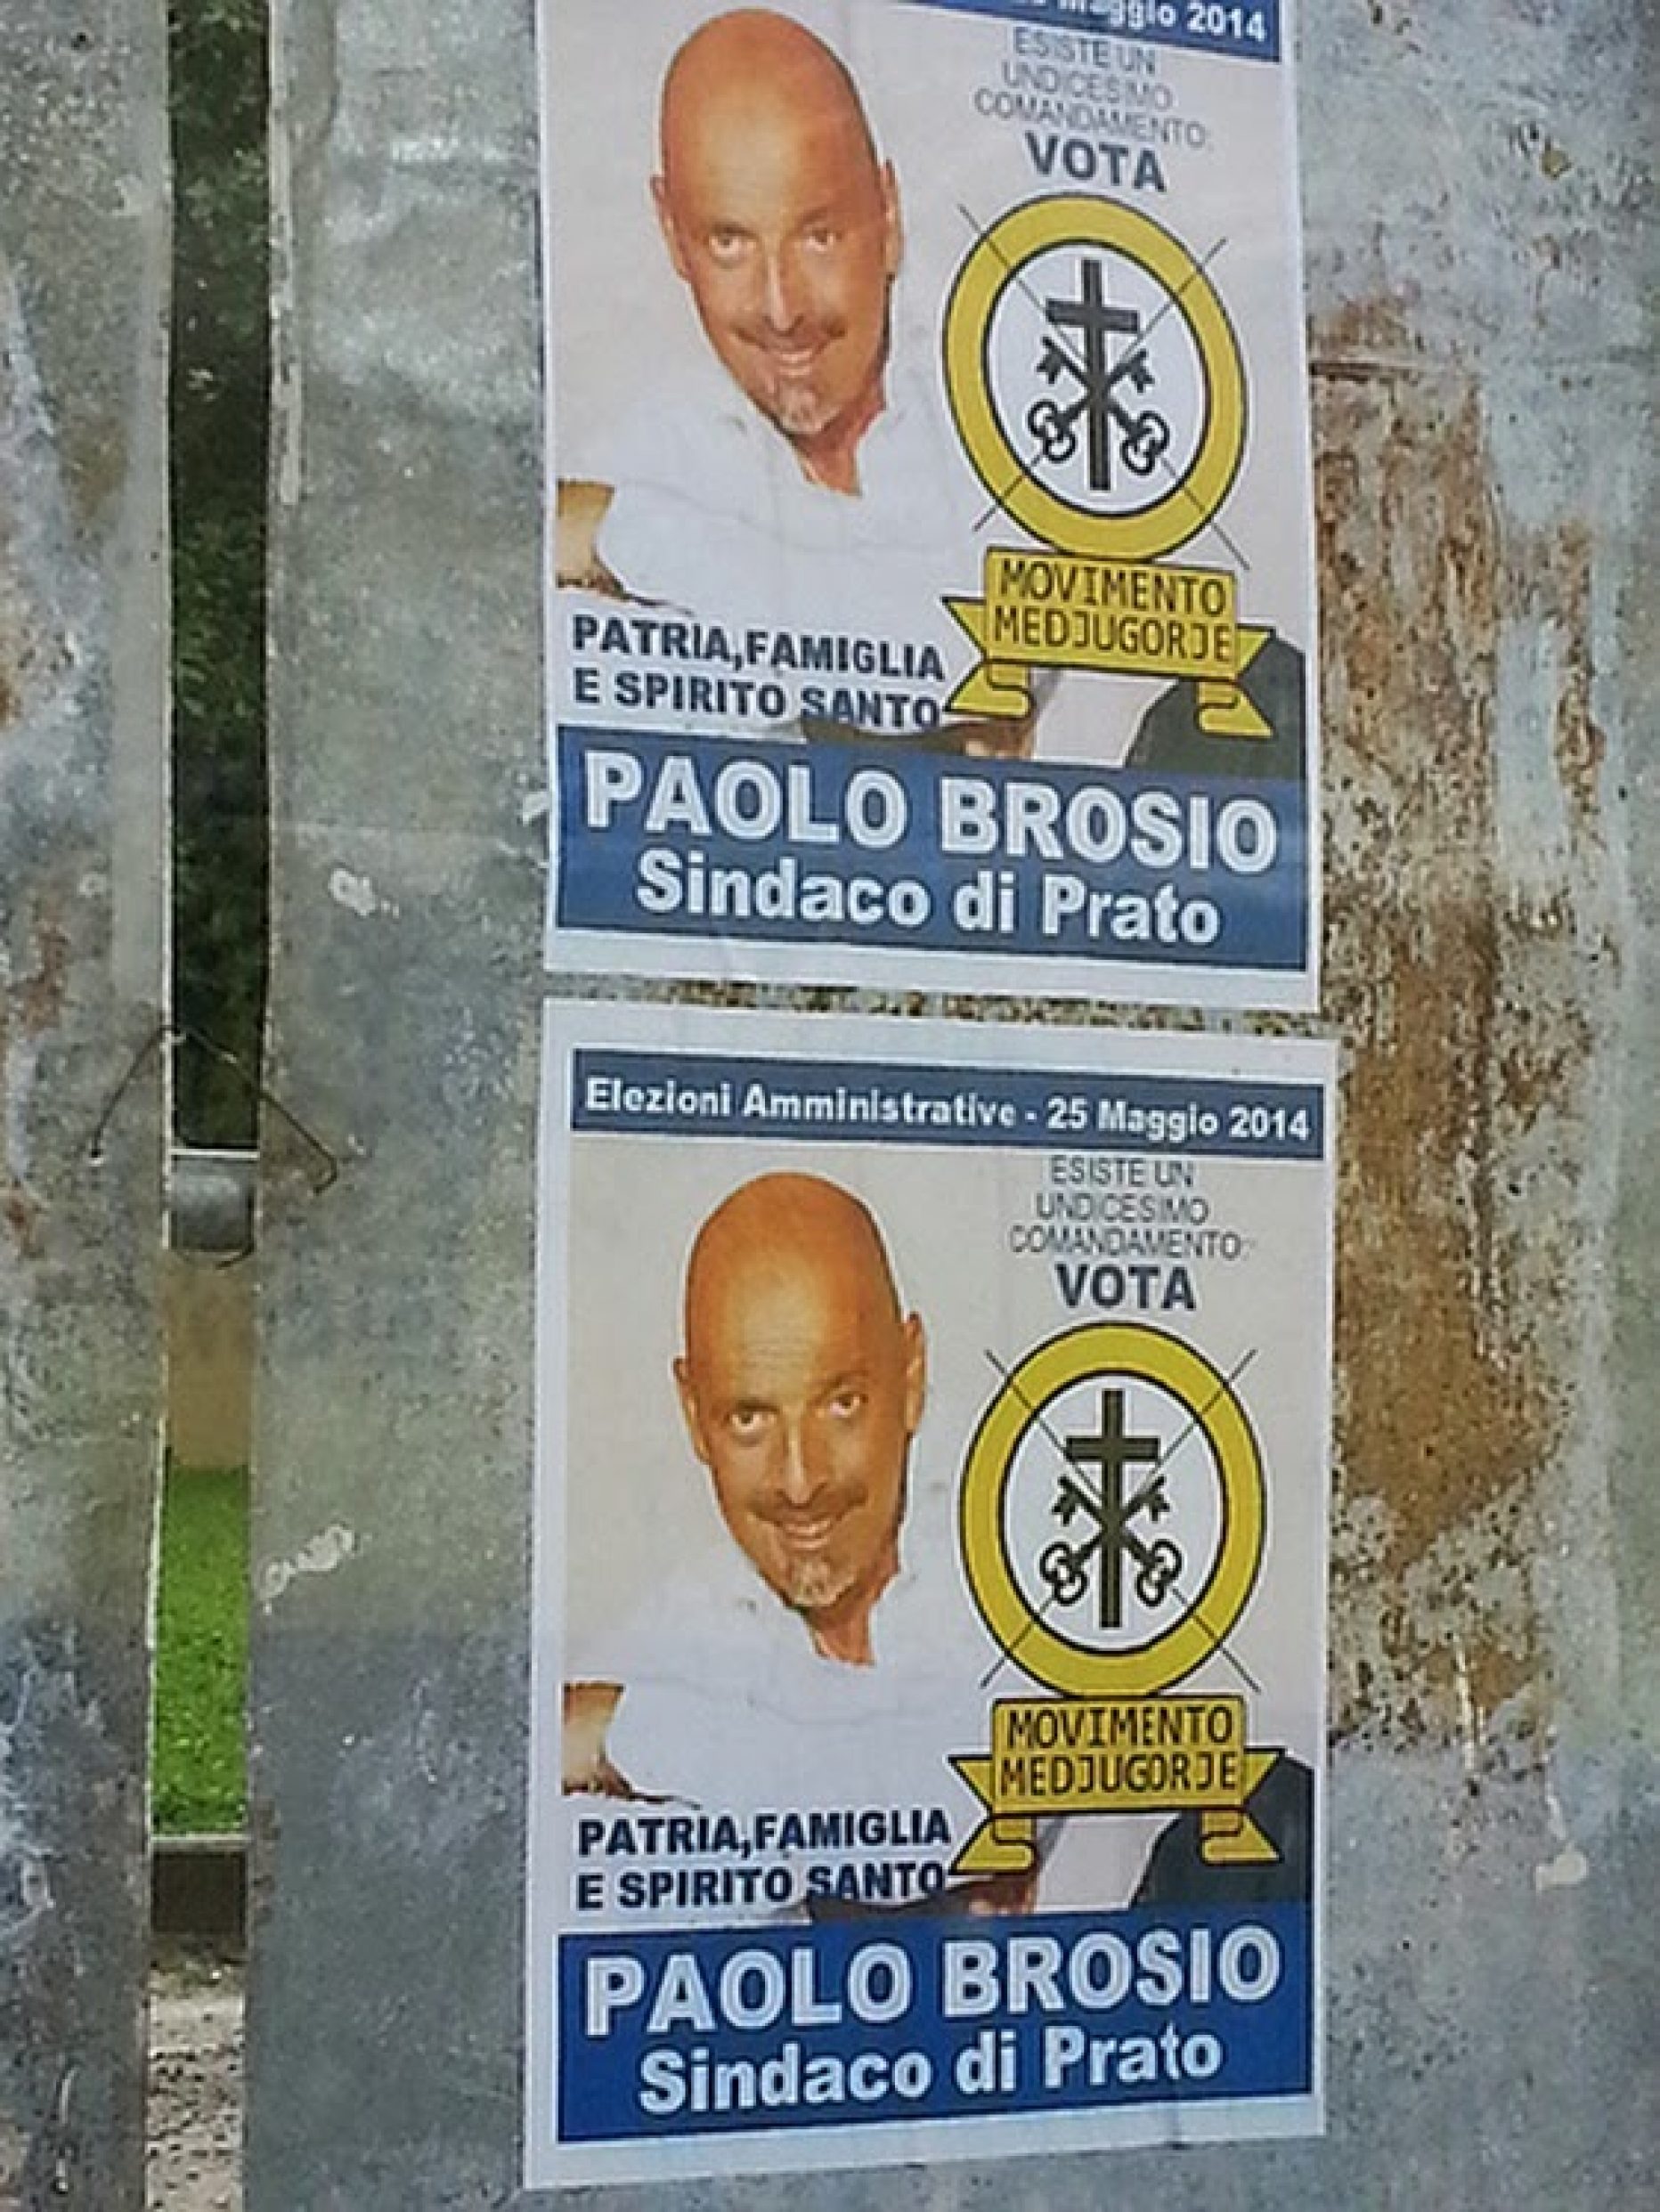 Vota Paolo Brosio sindaco di Prato!